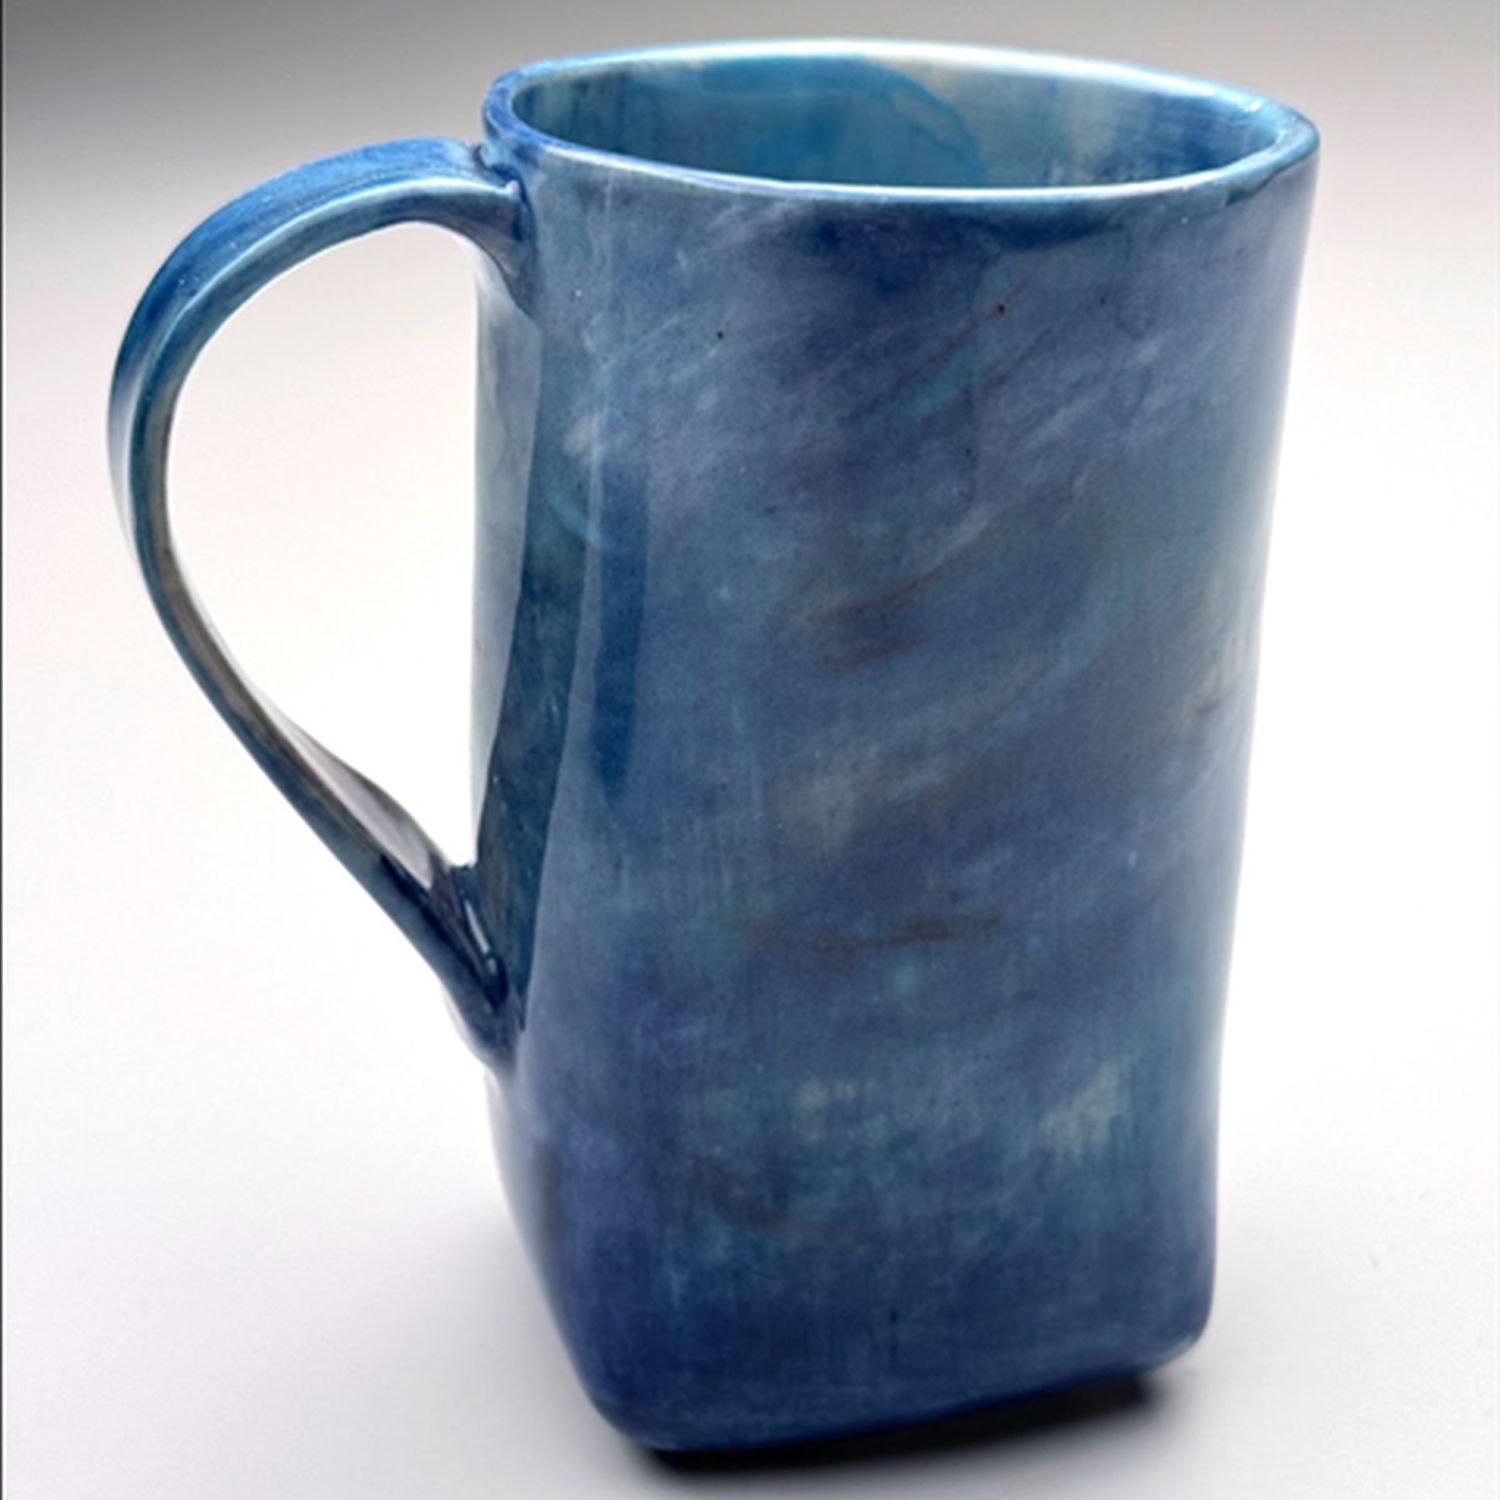 Audrey Mah: Blue Mug Product Image 1 of 1